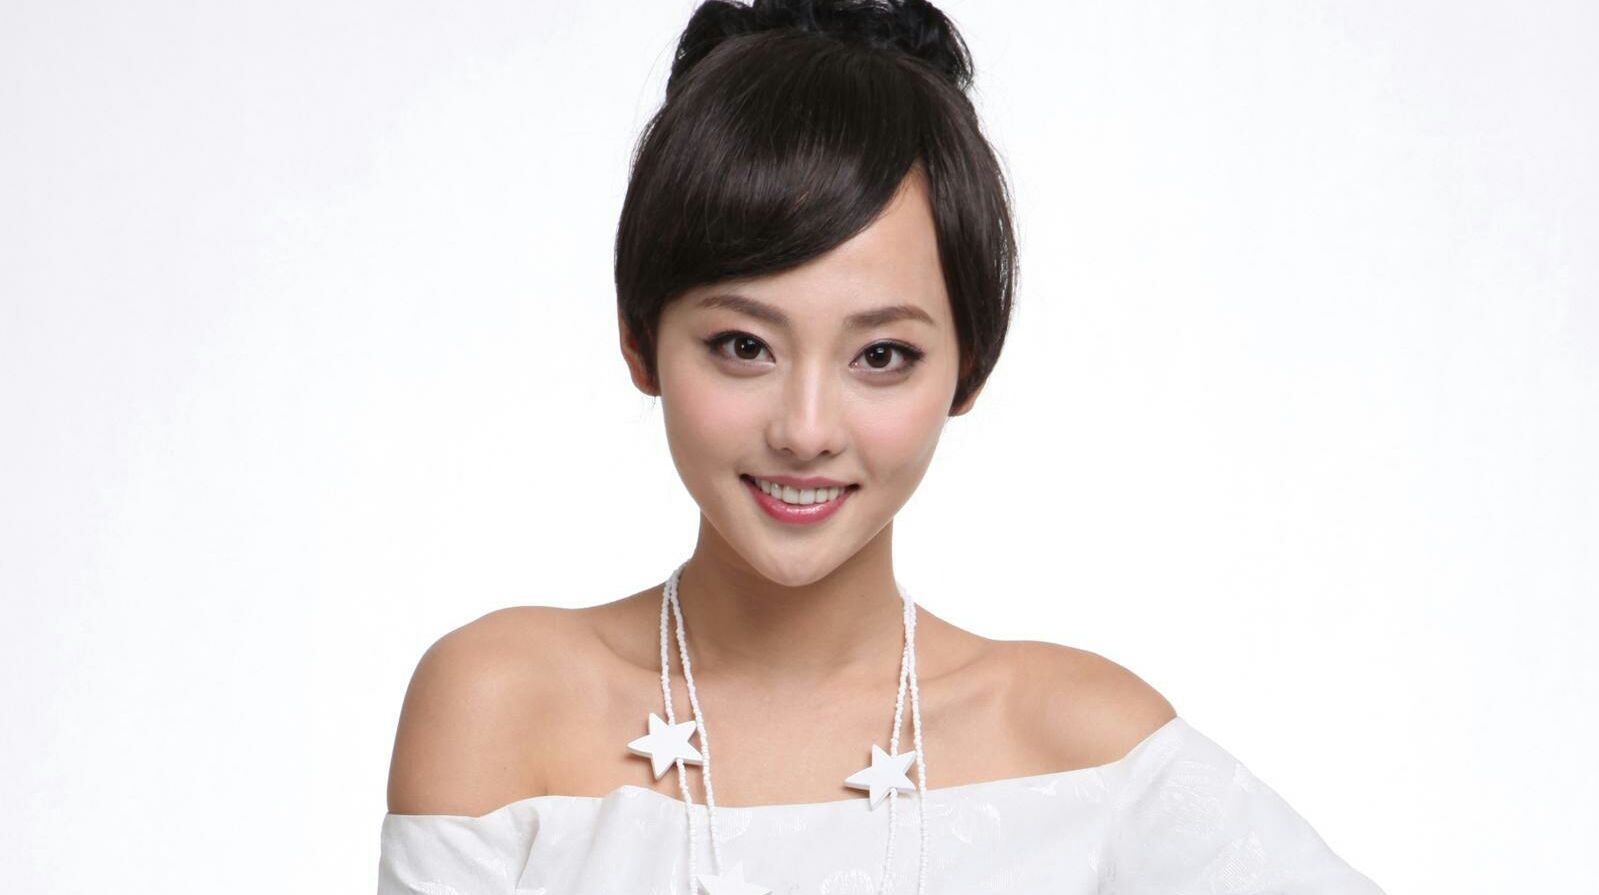 巨蟹座最漂亮的5位专属女星,刘涛第4,景甜第2,第1名美艳绝伦